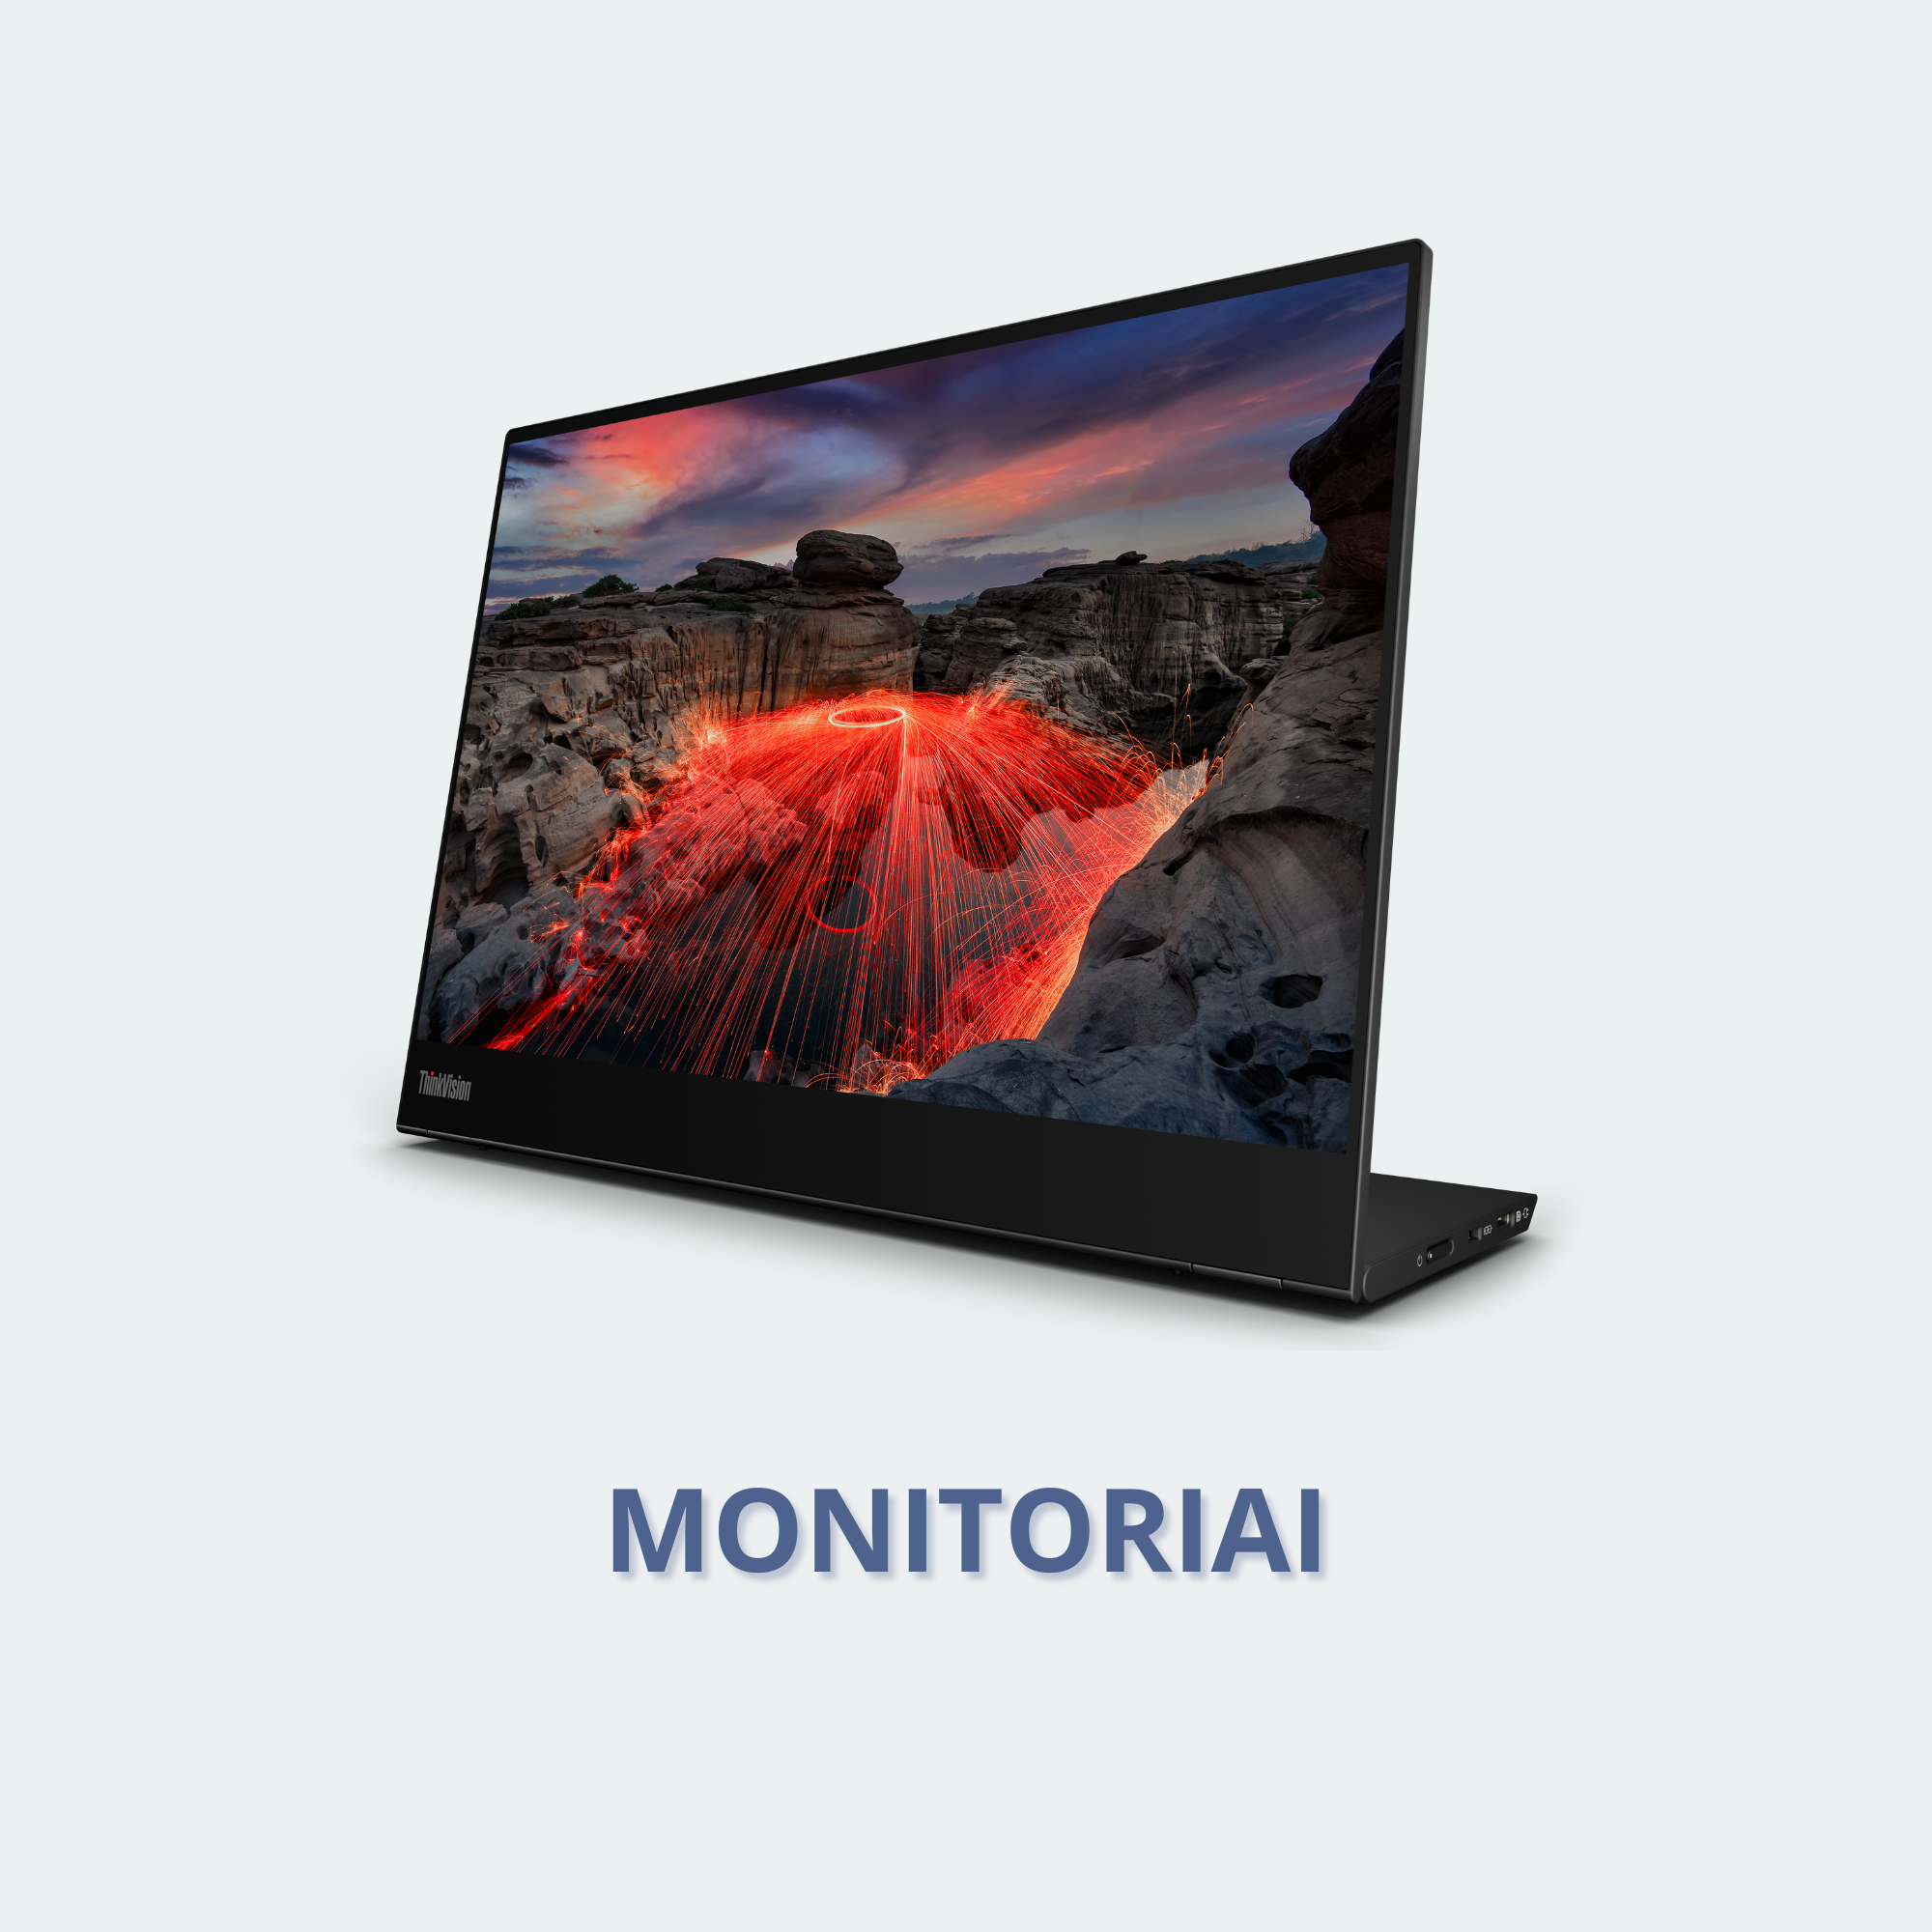 Mūsų įmonėje galite nusipirkti monitorių